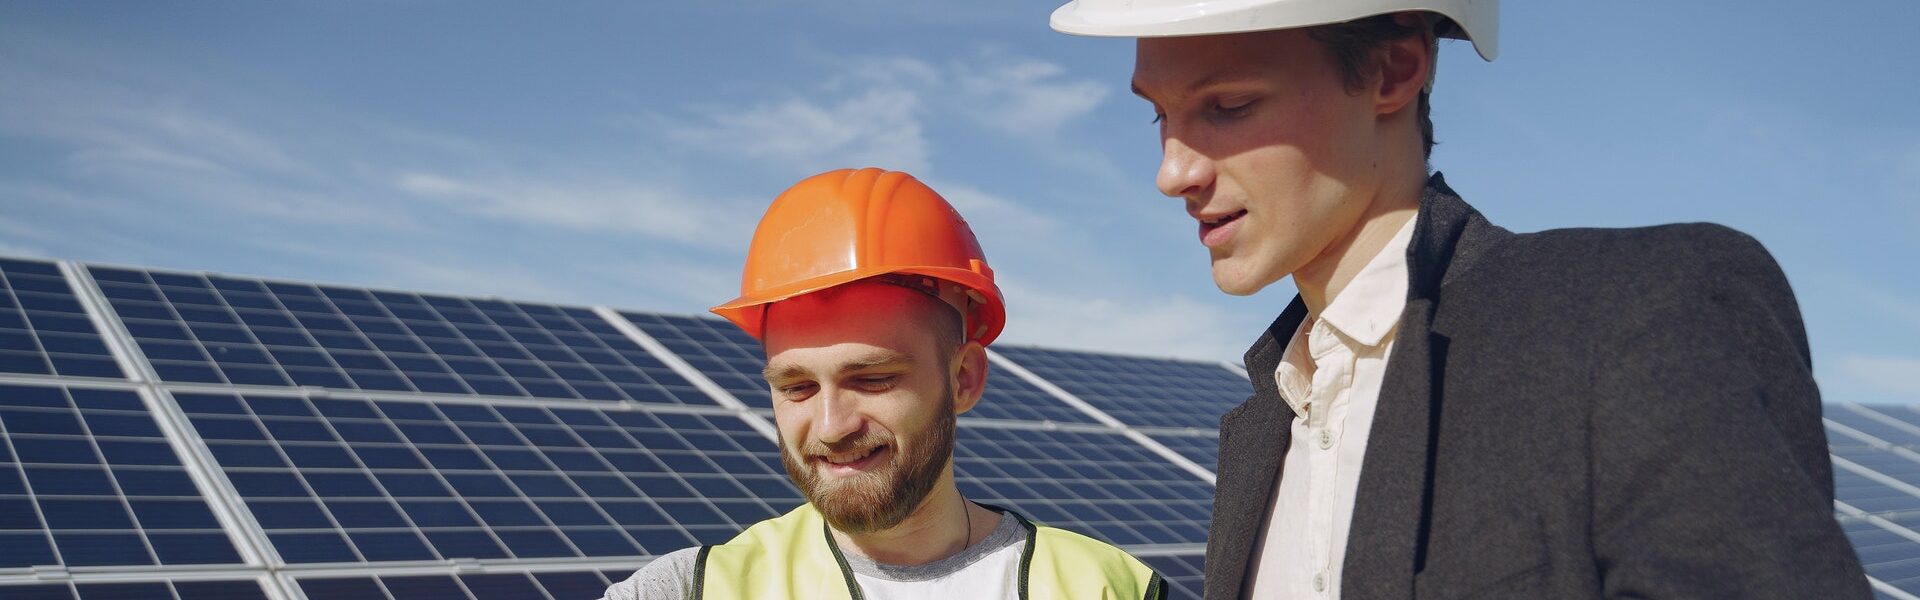 energia solar empresas - trabalhadores placas solares - Como ficar livre dos aumentos na conta de luz com energia solar?